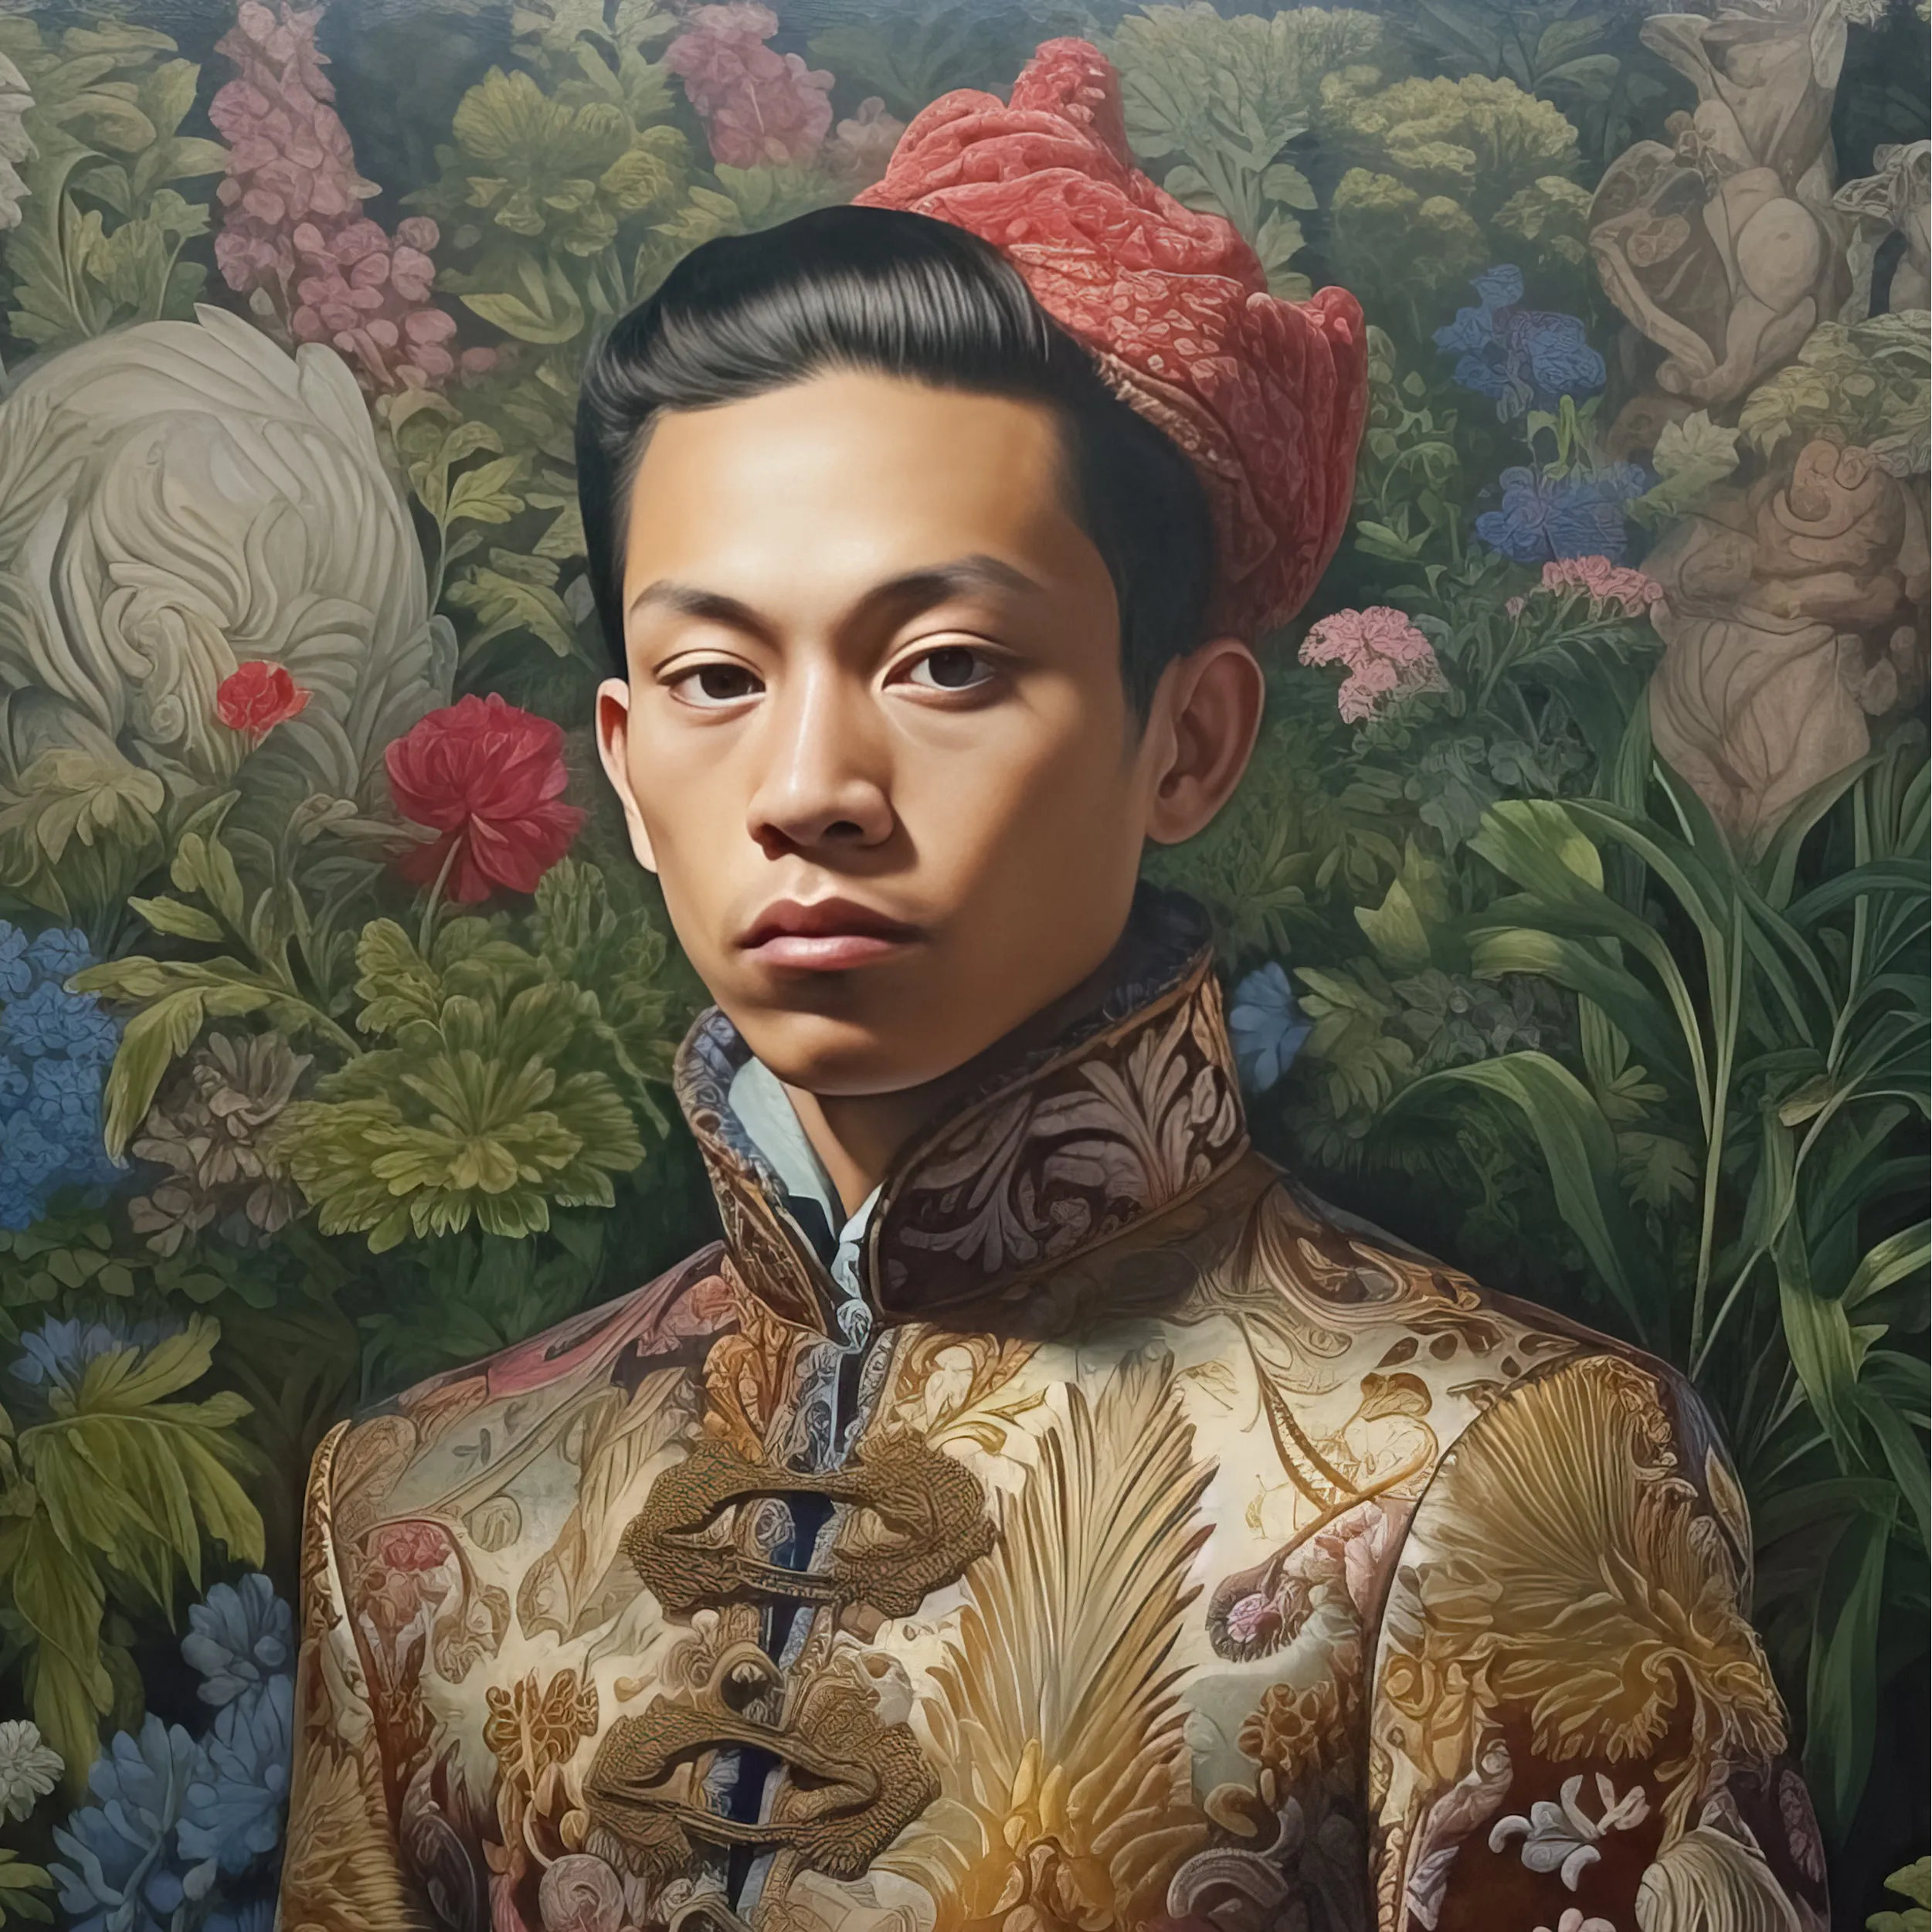 Prince Chakri - Gaysian Thai Royalty Dandy Queerart Print - Posters Prints & Visual Artwork - Aesthetic Art